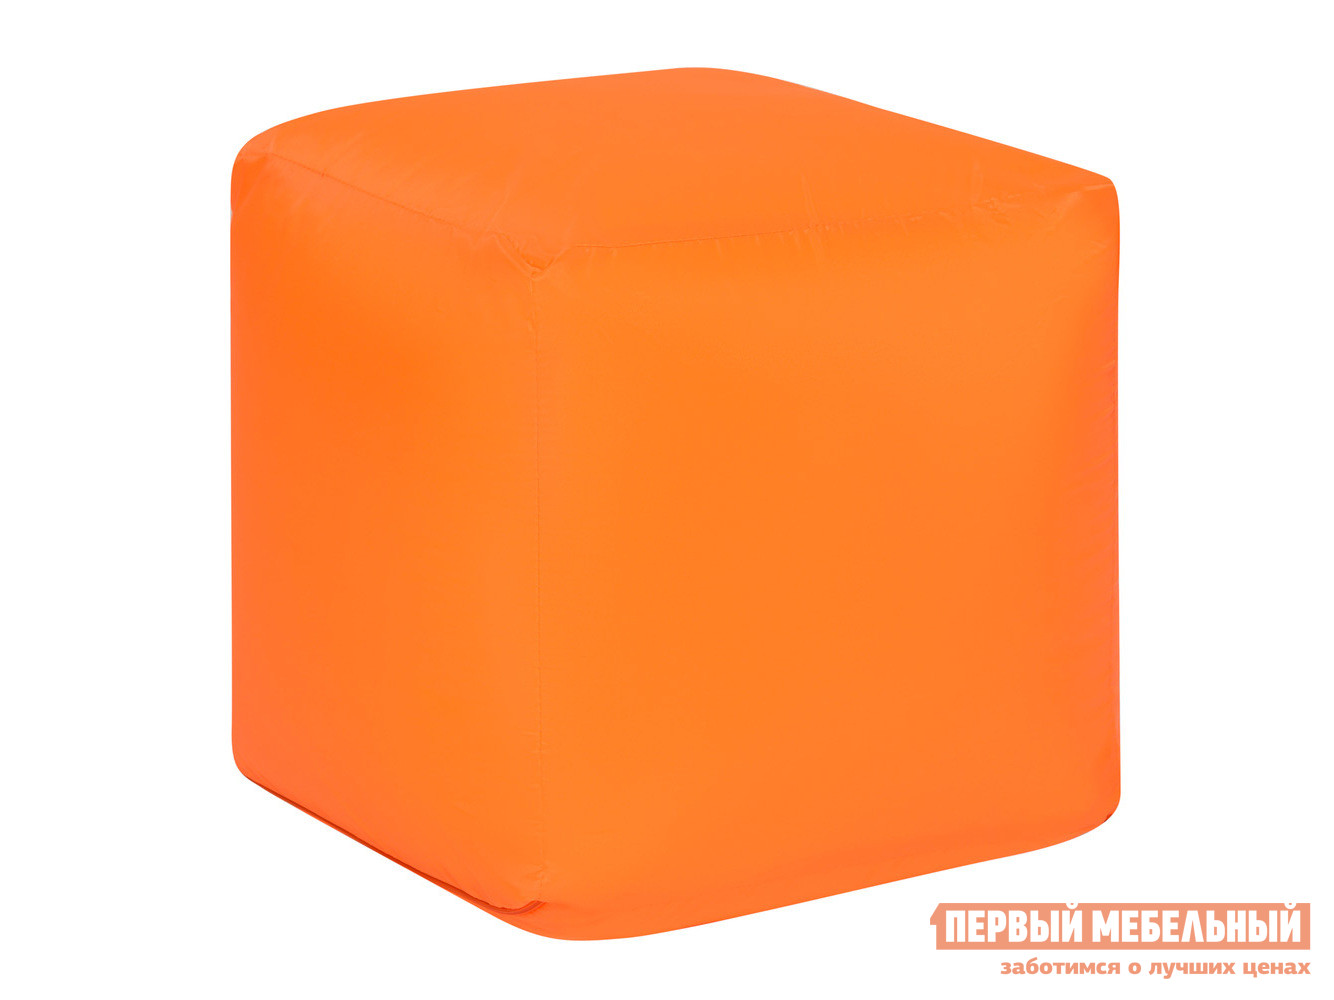 Пуфик  Куб Оранжевый, оксфорд от Первый Мебельный